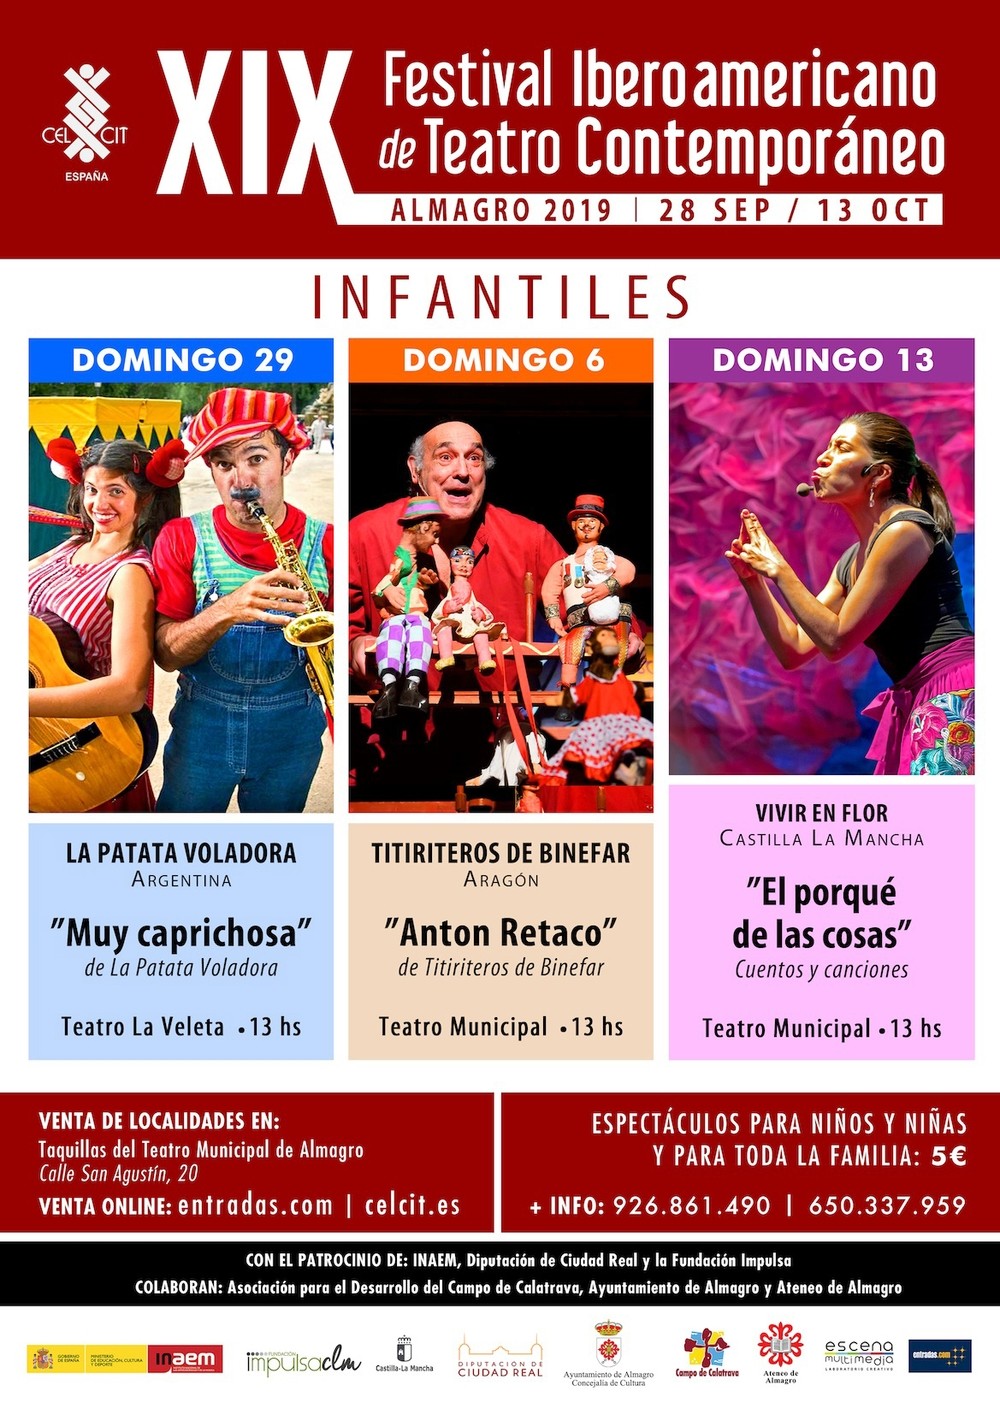 Llega el XIX Festival Iberoamericano de Teatro Contemporáneo